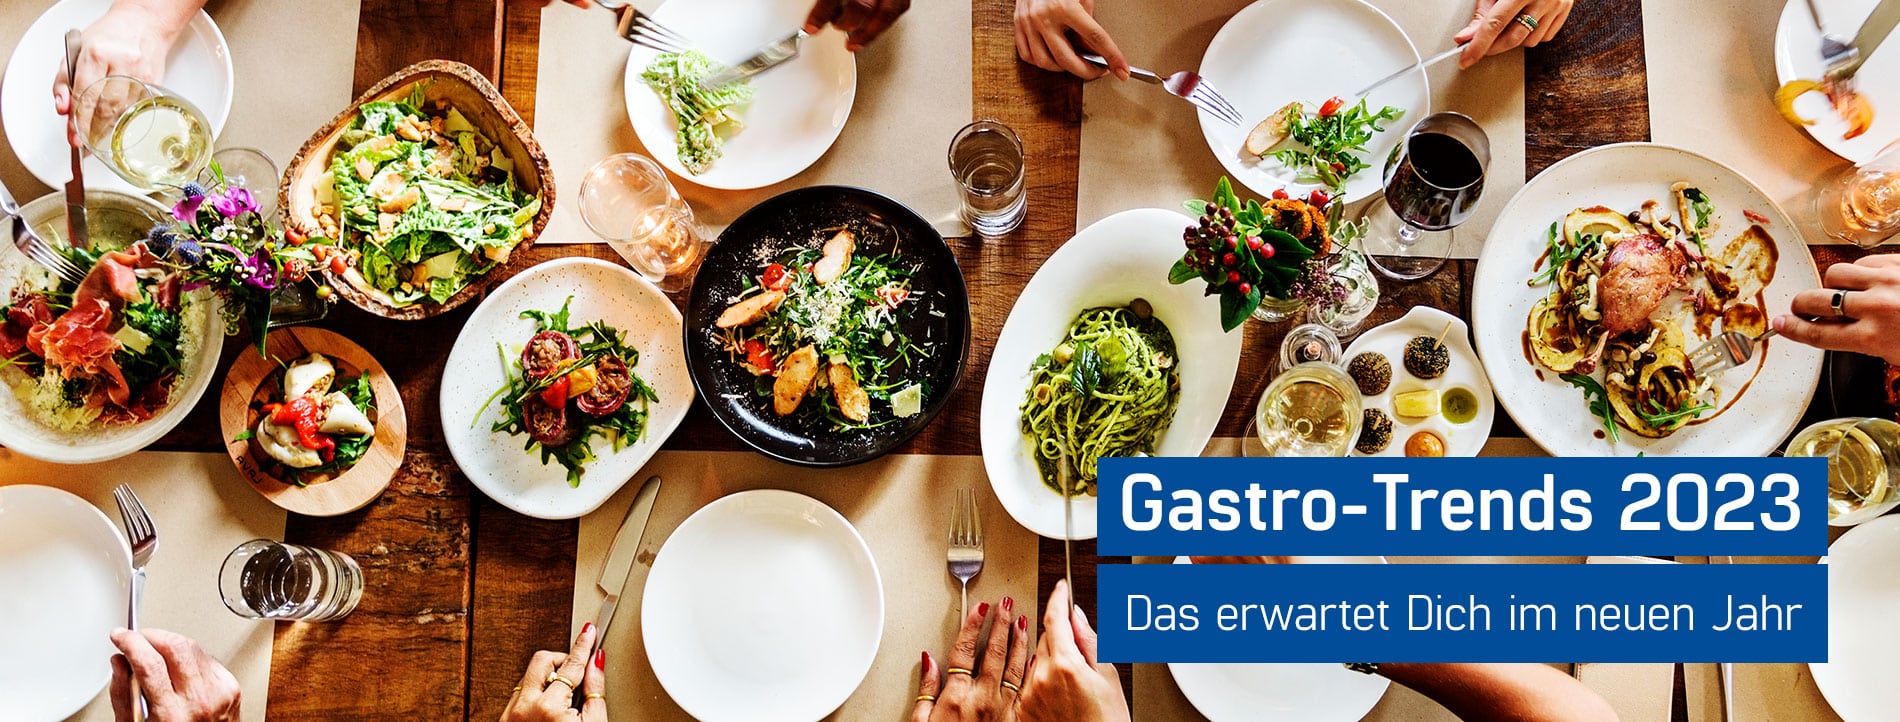 Kulinarische Vielfalt in der Gastronomie - GastroSoft stellt Dir die Gastro Trends für 2023 vor